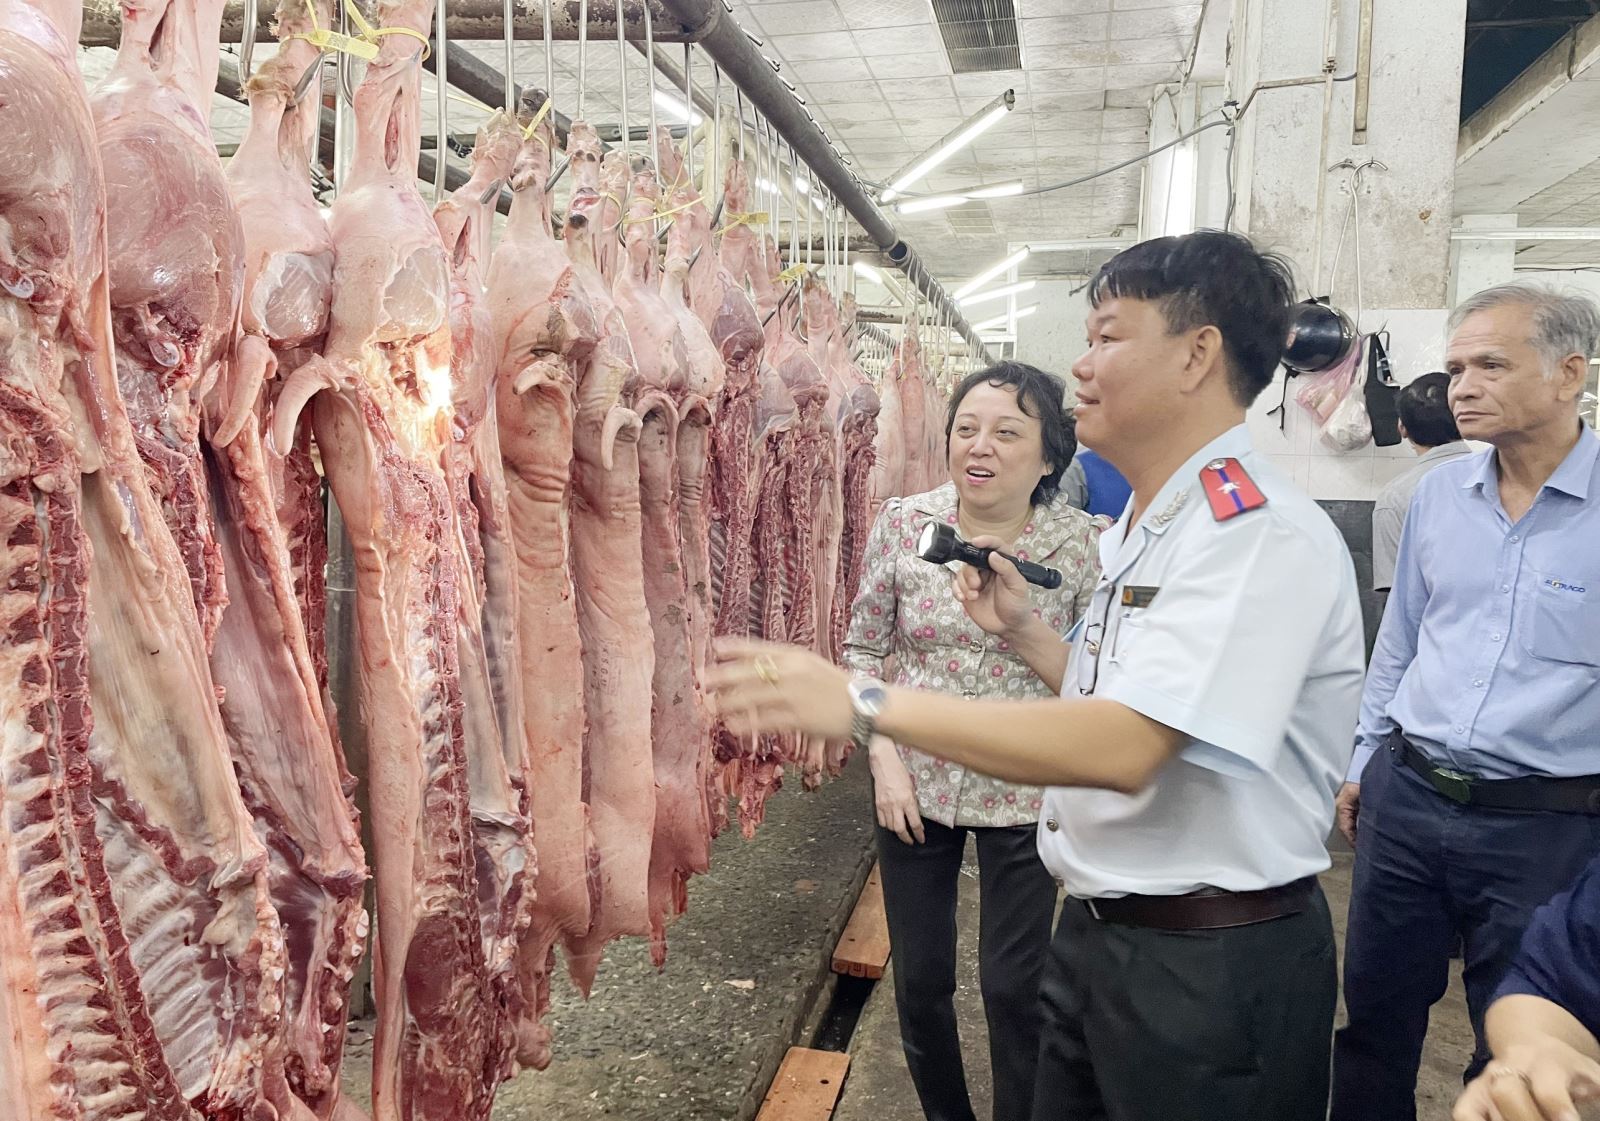 Đoàn kiểm tra Ban Quản lý an toàn thực phẩm Thành phố Hồ Chí Minh kiểm tra thịt lợn nhập về chợ đầu mối nông sản thực phẩm Hóc Môn. Ảnh: TTXVN